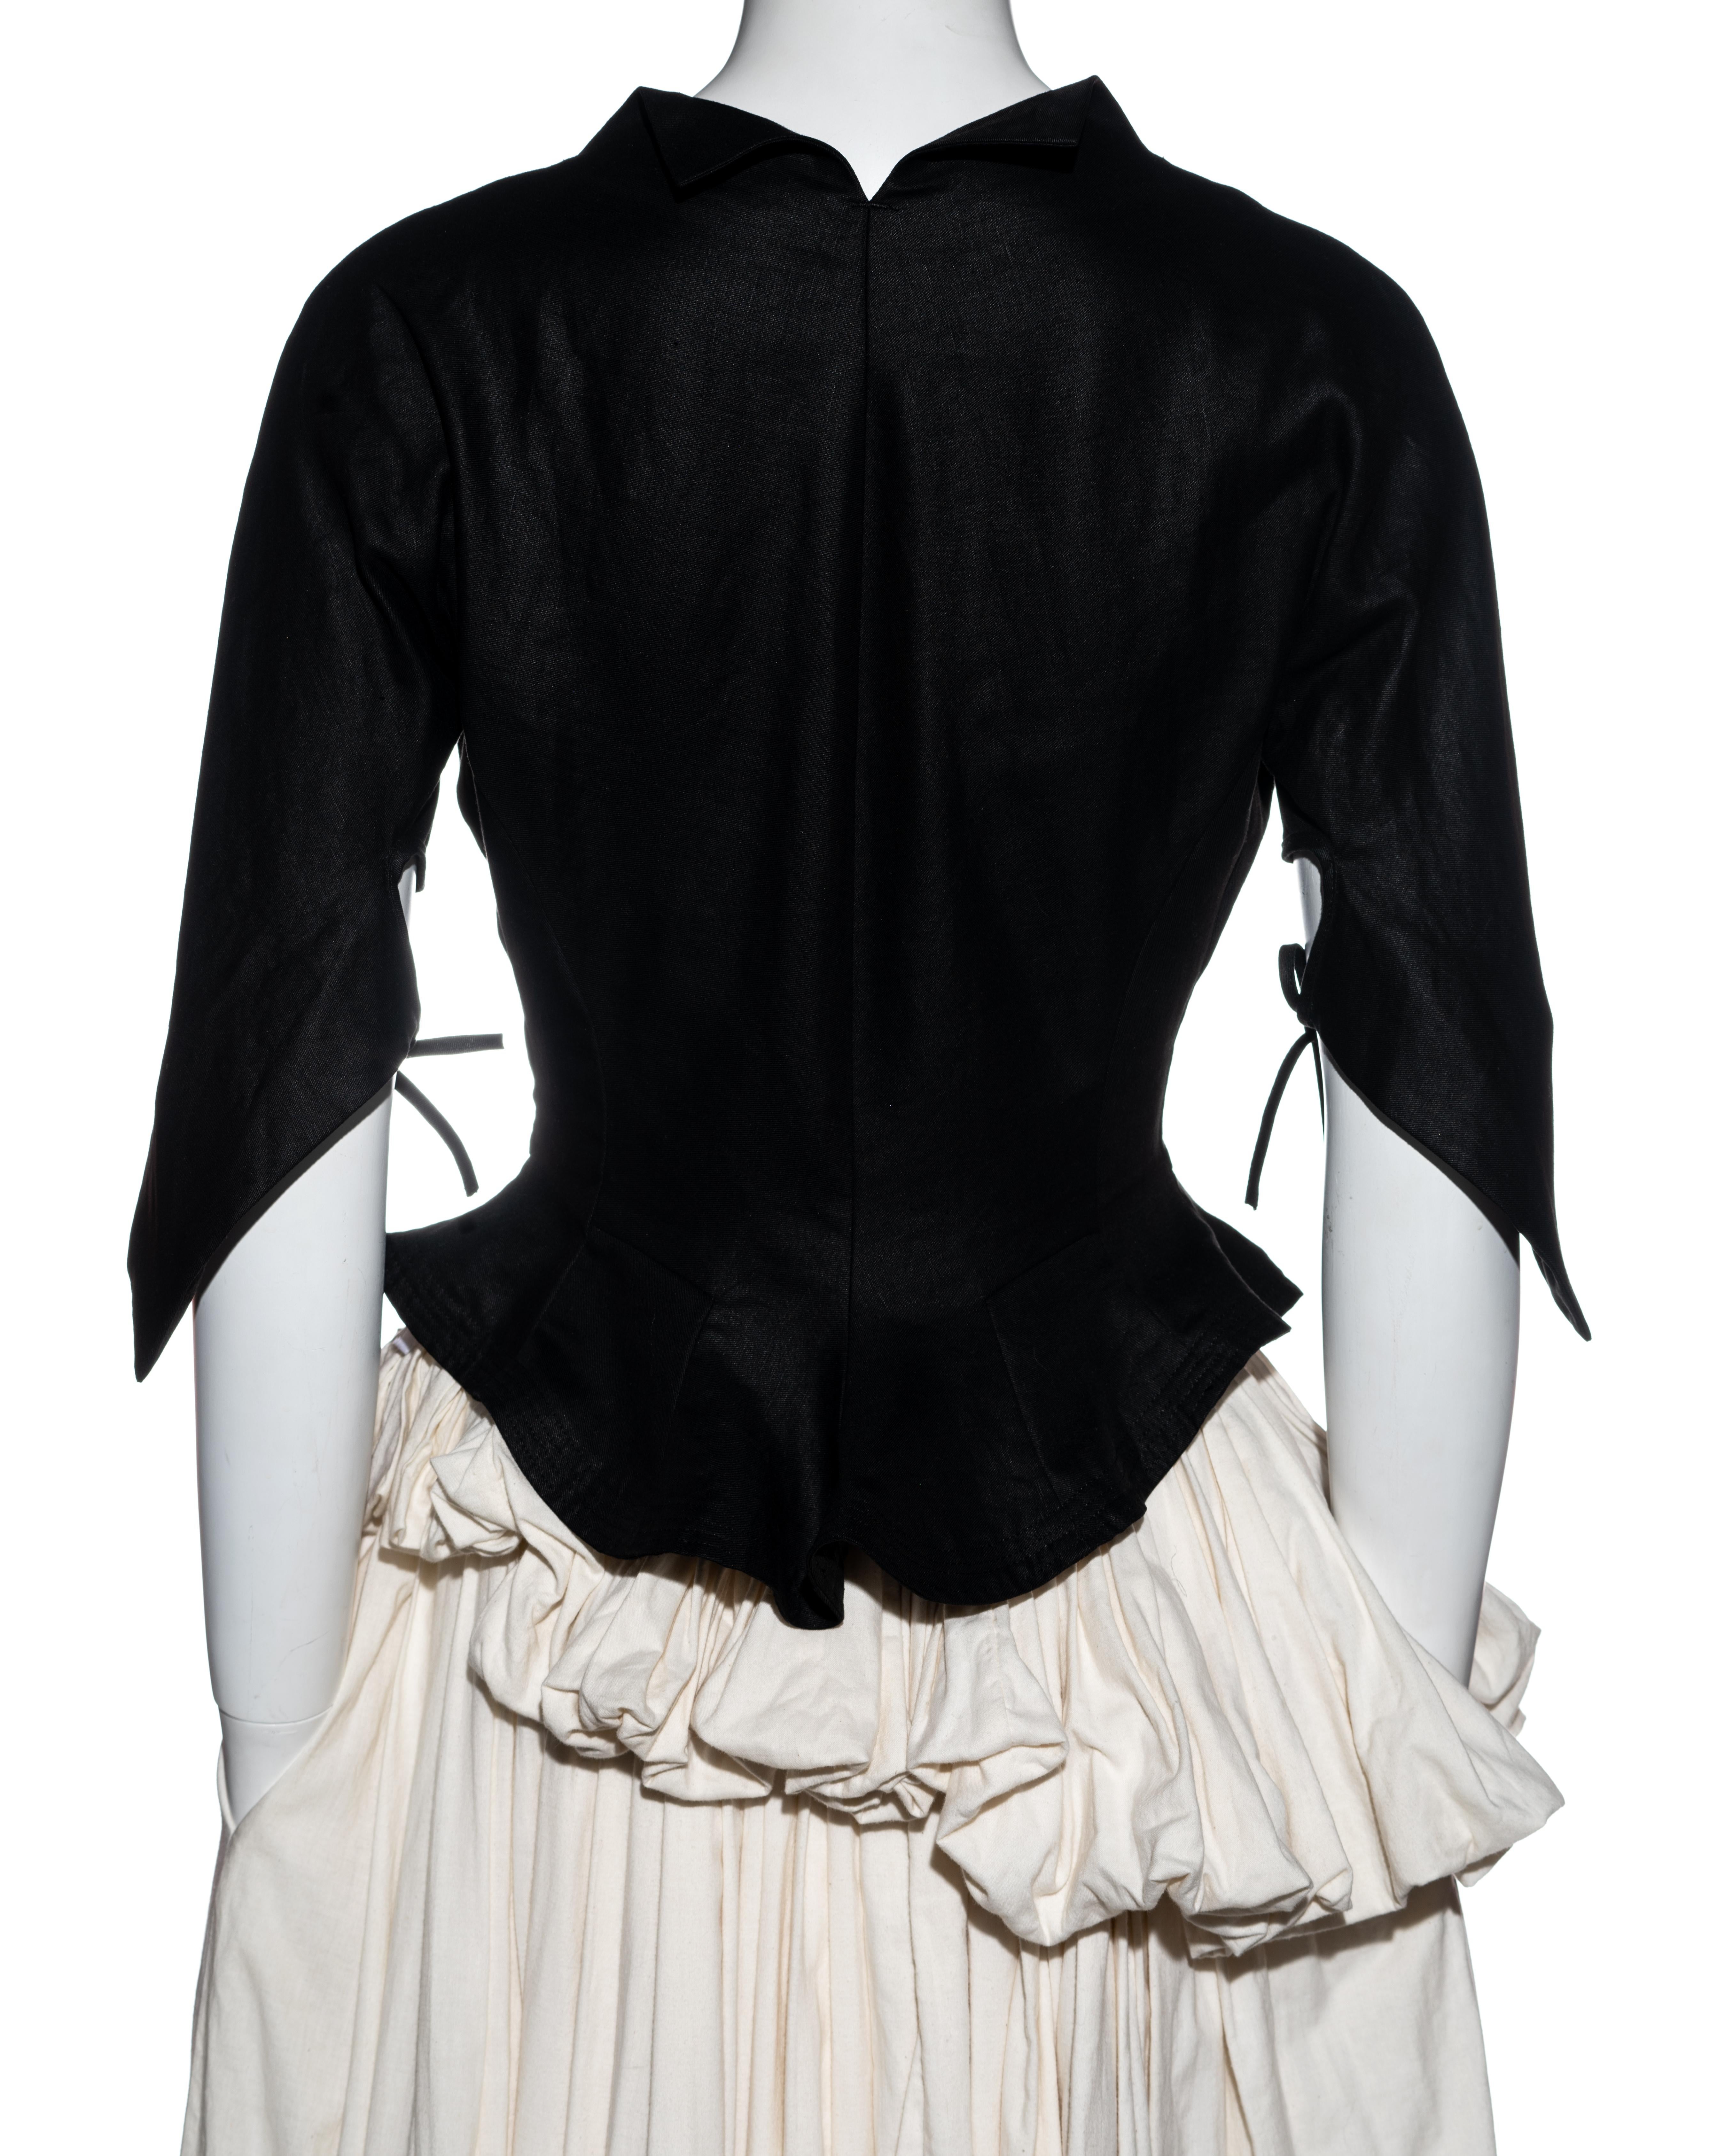 Yohji Yamamoto black and white cotton bustled skirt and jacket set, ss 2000 2